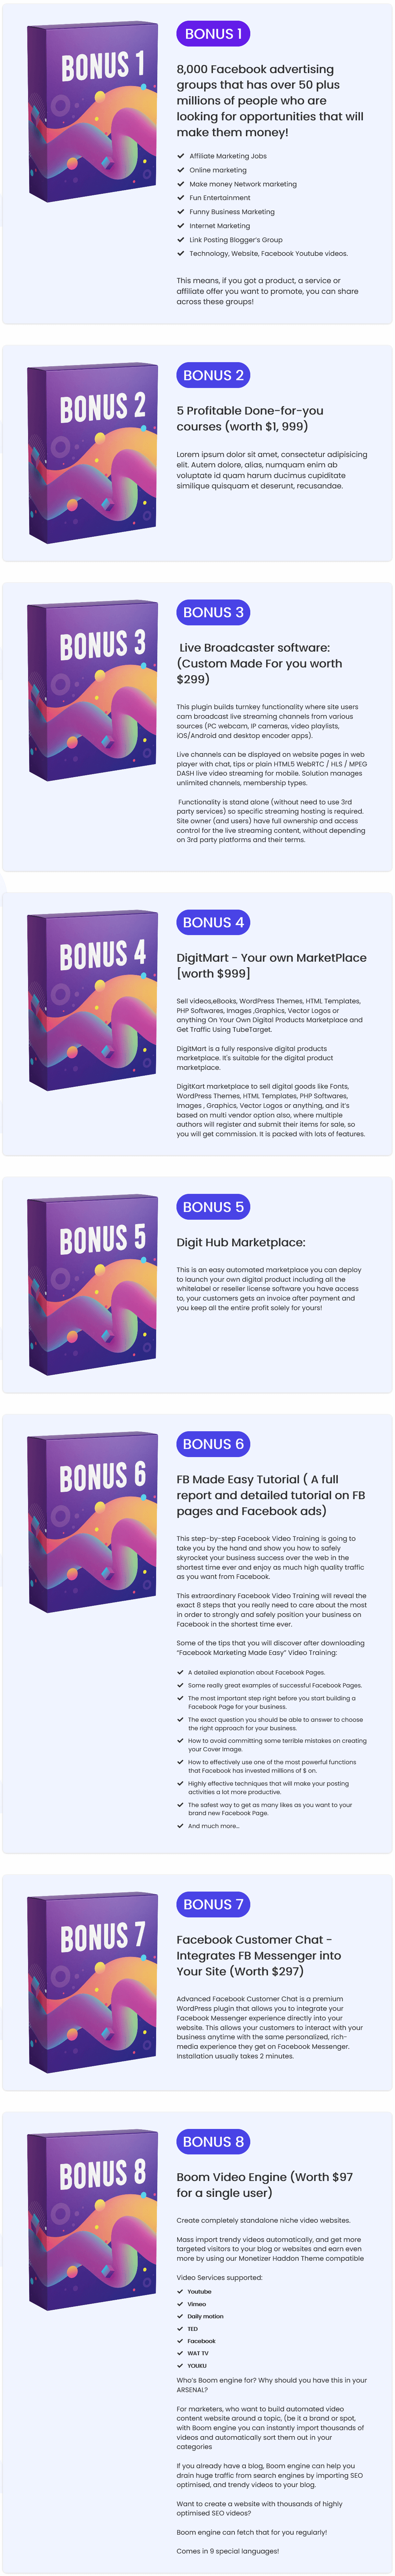 MailPanda-bonus